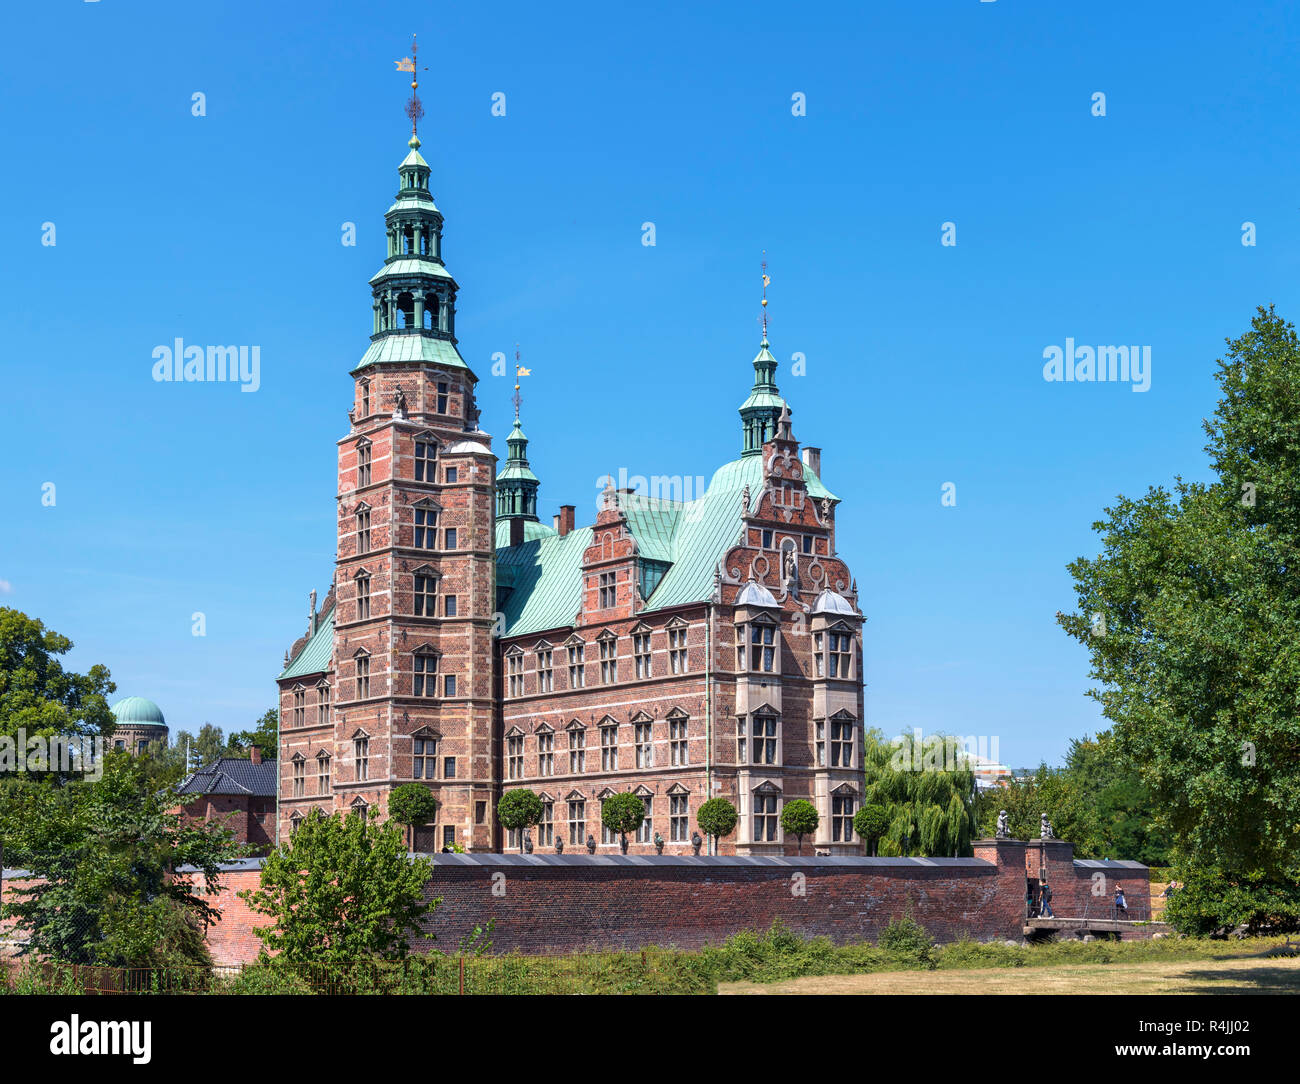 Rosenborg Slot (Rosenborg Castle), Copenhagen, Denmark Stock Photo